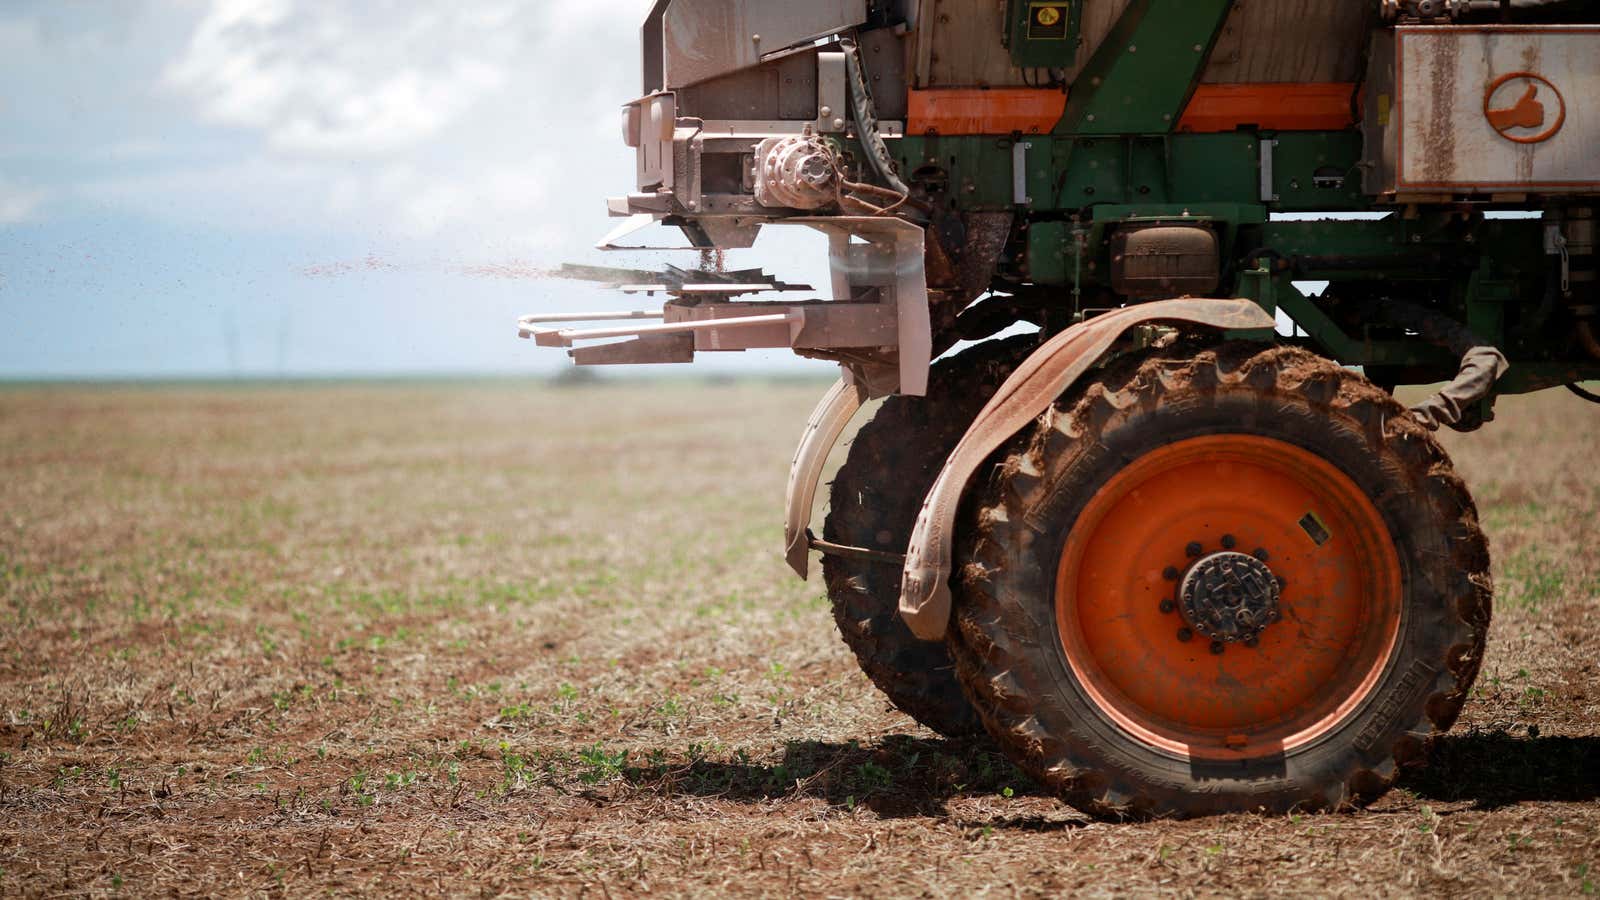 A tractor spreading fertilizer on a soybean field in Brazil.